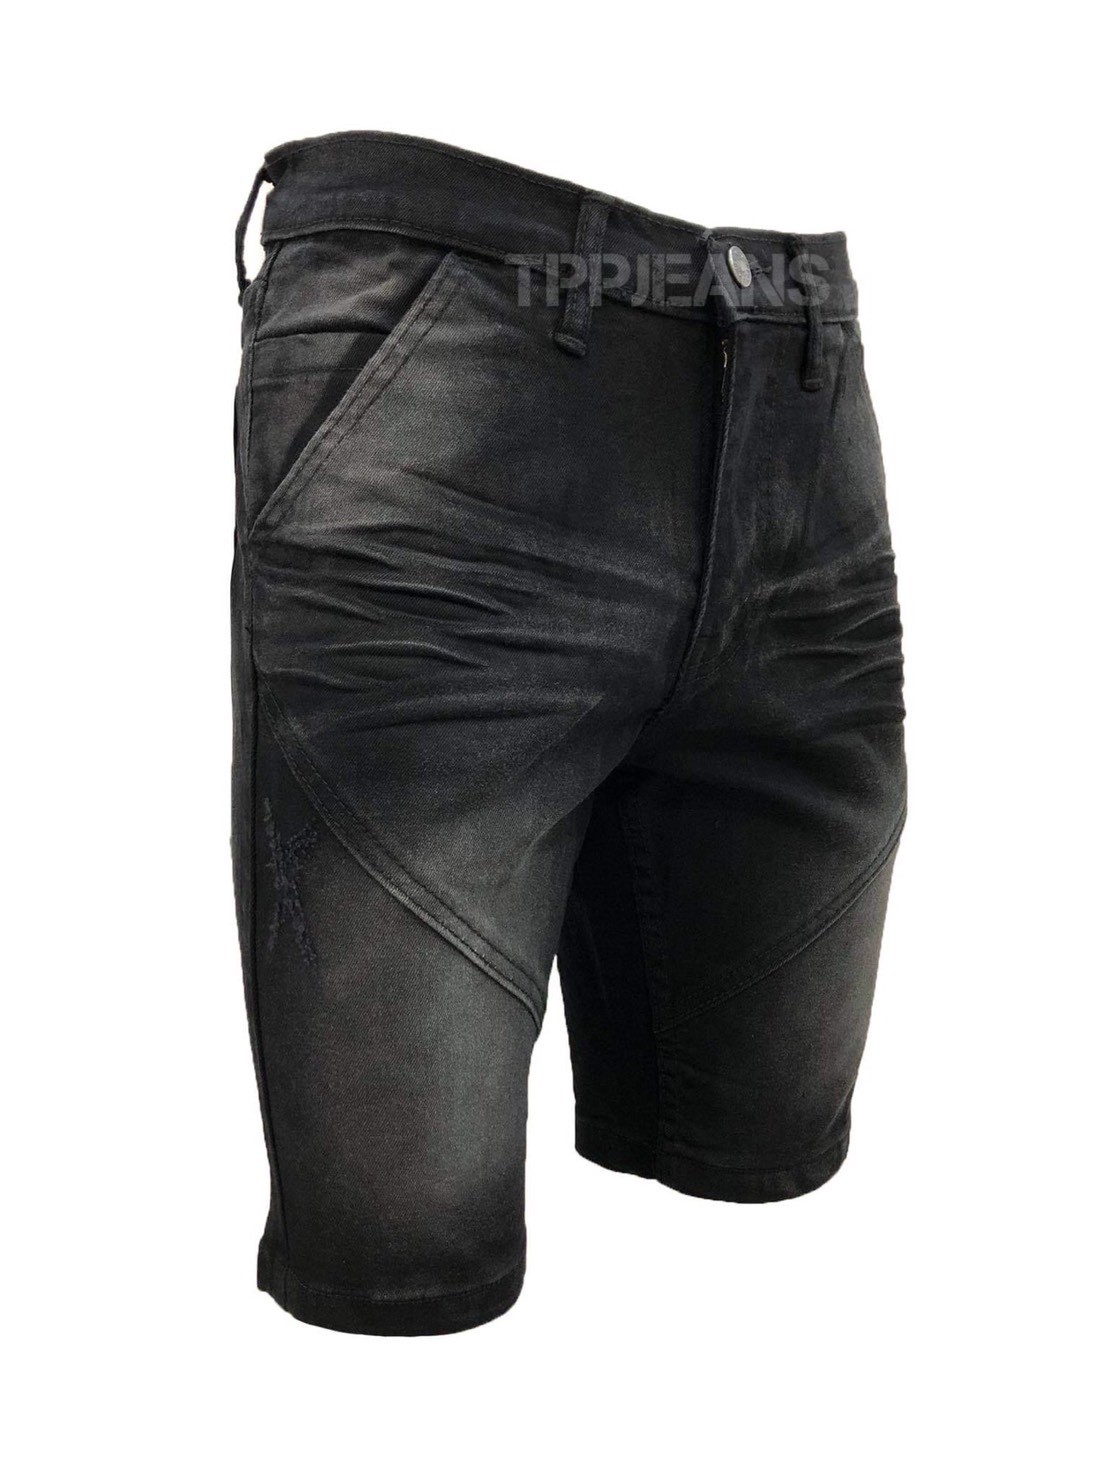 TPPJEANS Hunks Shorts Denim กางเกงยีนส์ขาสั้นชายสีดำฟอก เป้าซิป ผ้ายืด Size 28-42 ความยาวเหนือเข่า19-21นิ้วตามไซส์ รับชำระปลายทาง